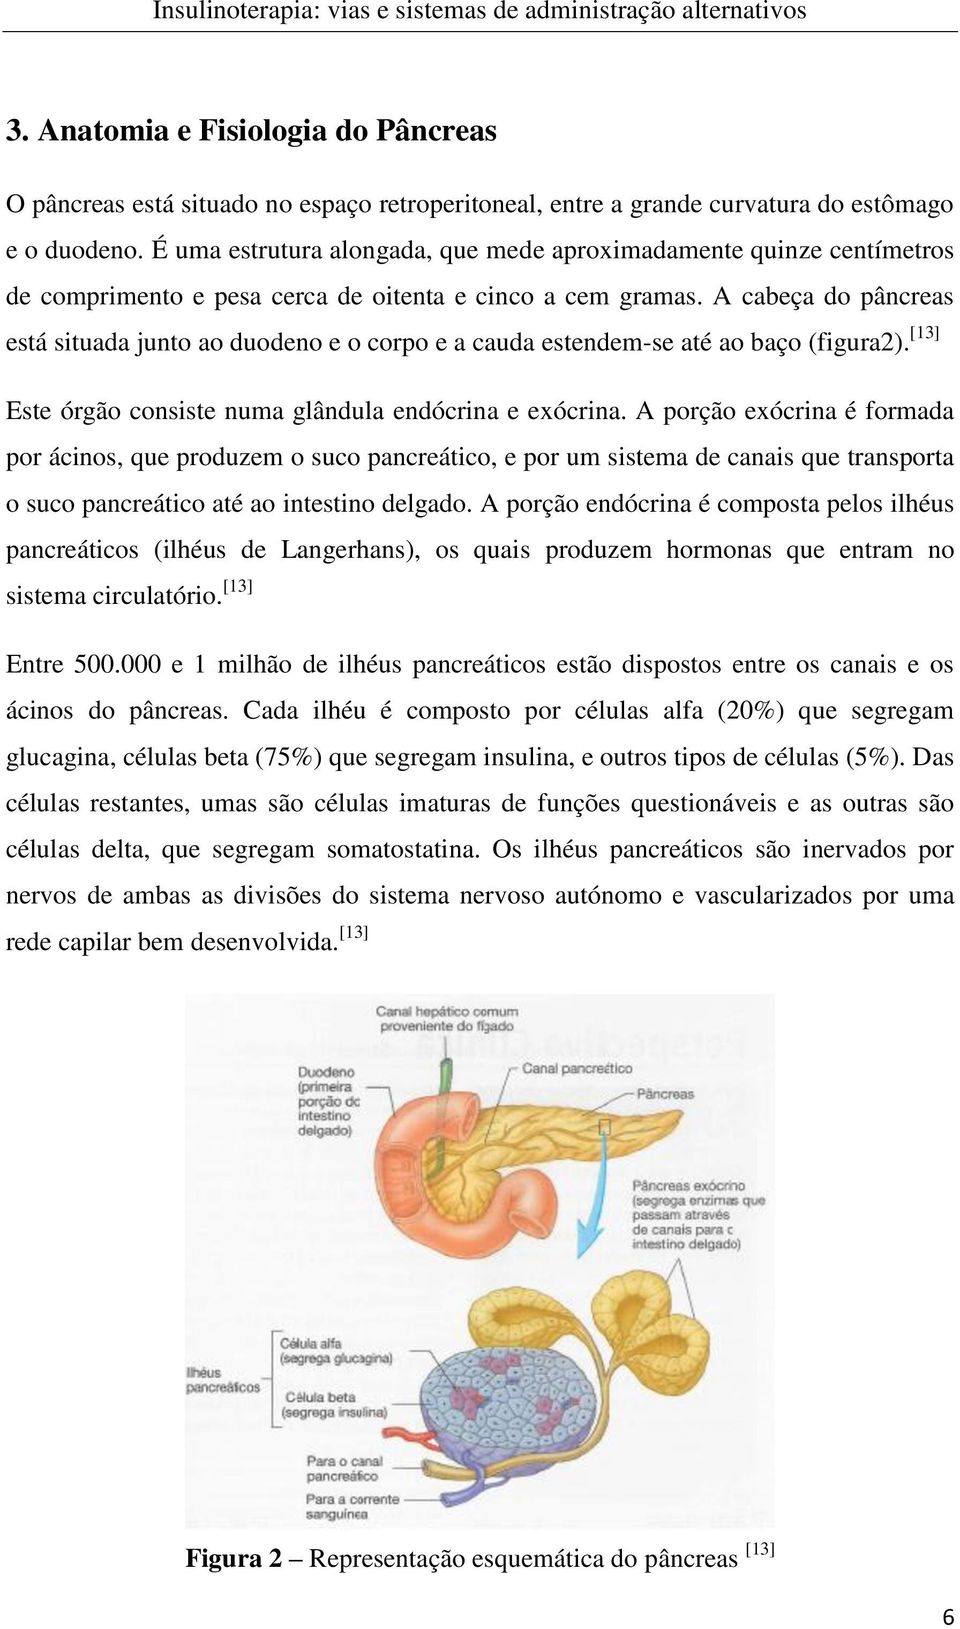 A cabeça do pâncreas está situada junto ao duodeno e o corpo e a cauda estendem-se até ao baço (figura2). [13] Este órgão consiste numa glândula endócrina e exócrina.